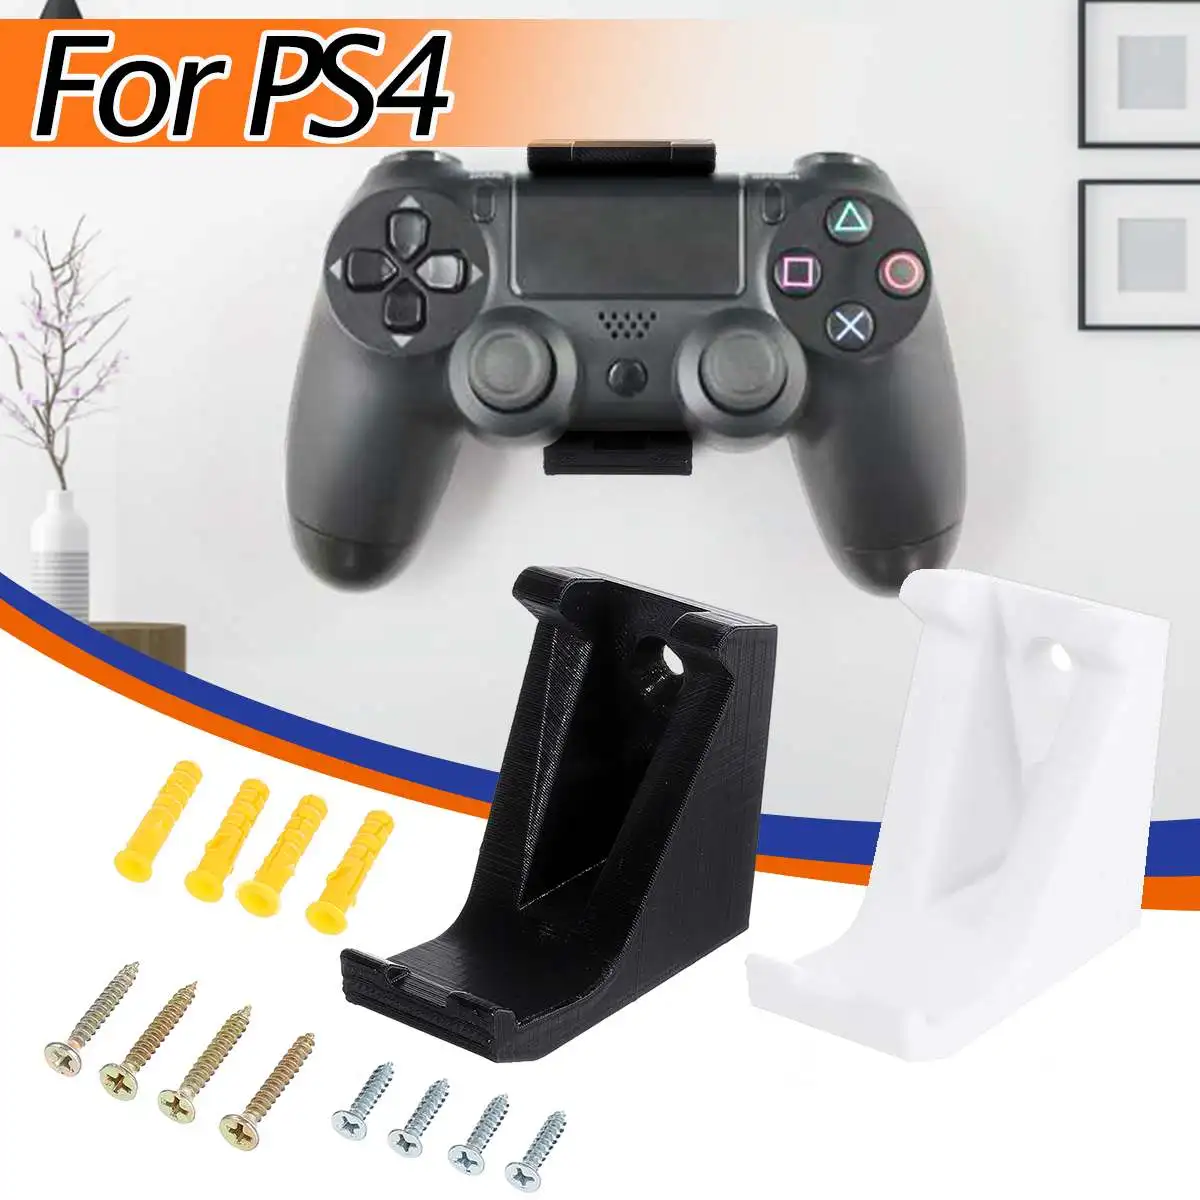 ABS белый/черный настенный держатель для PS4 тонкий для Playstation 4 Pro контроллер игровой коврик док-станция геймпад подставка держатель с винтами